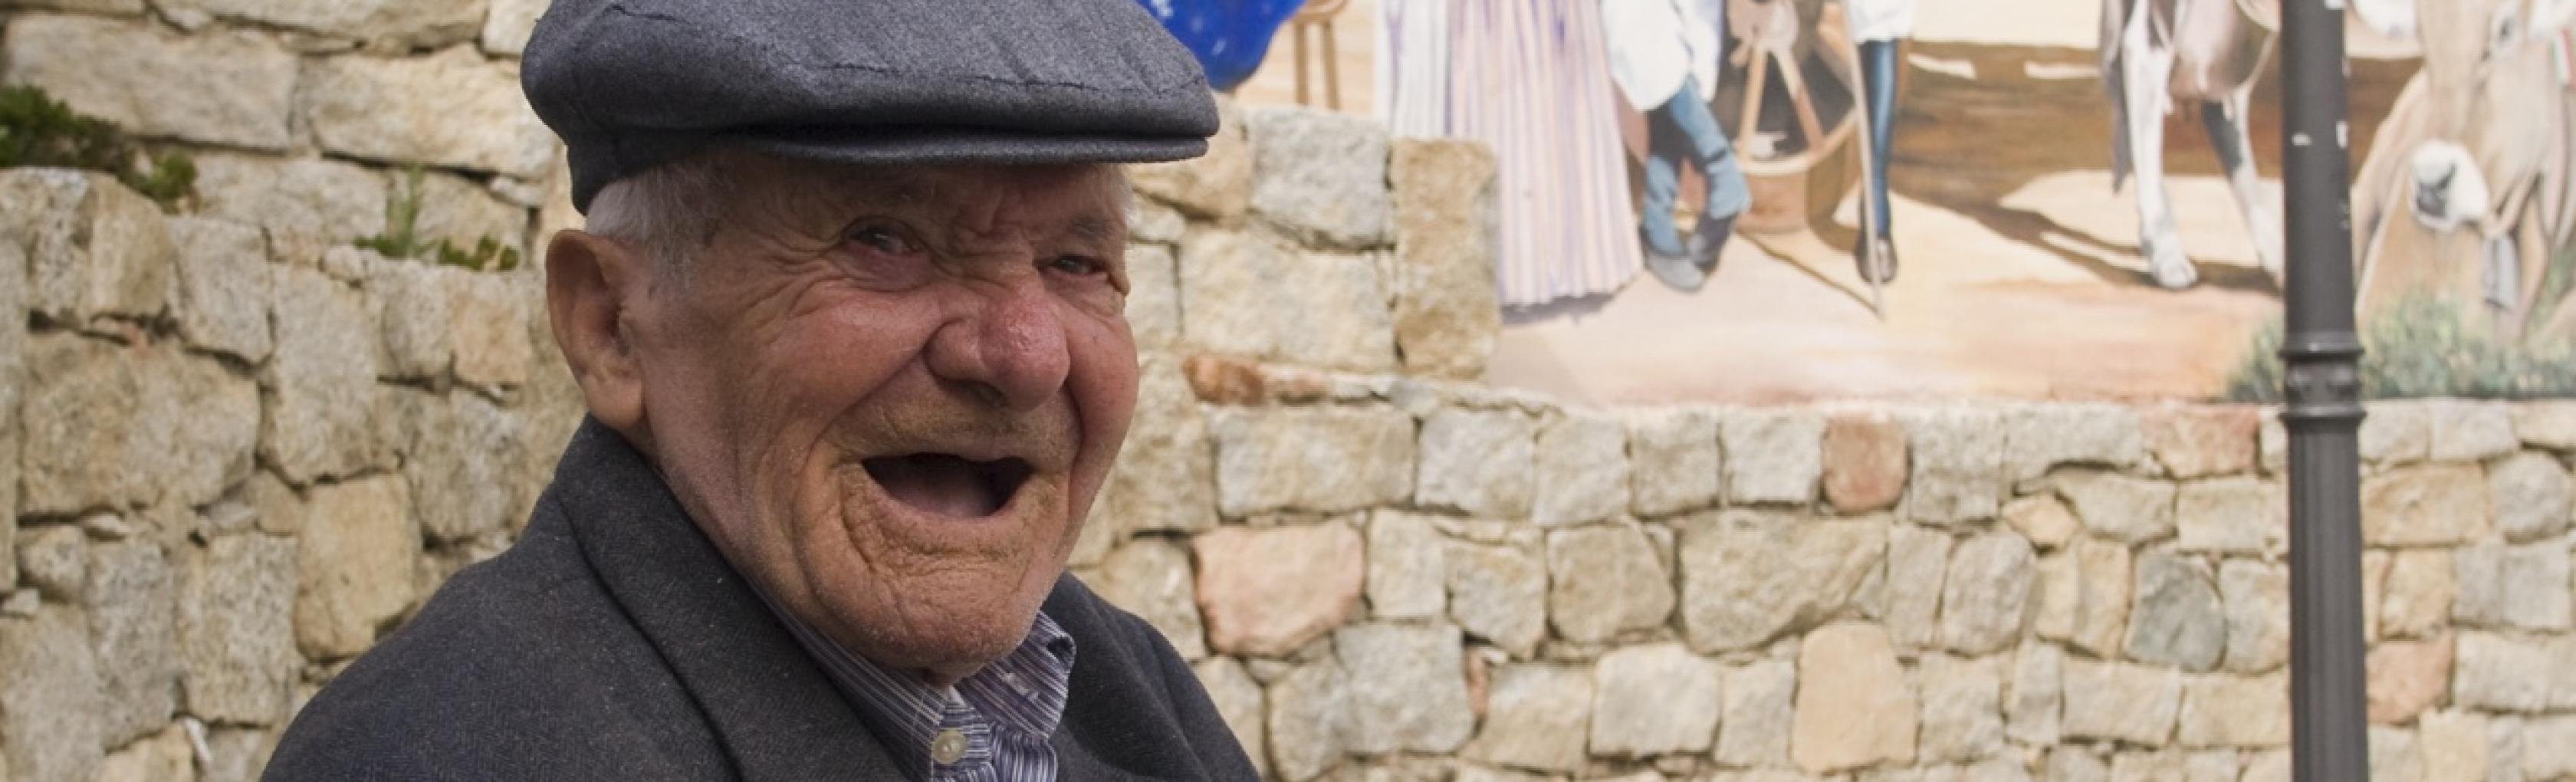 Anziano centenario di Loceri